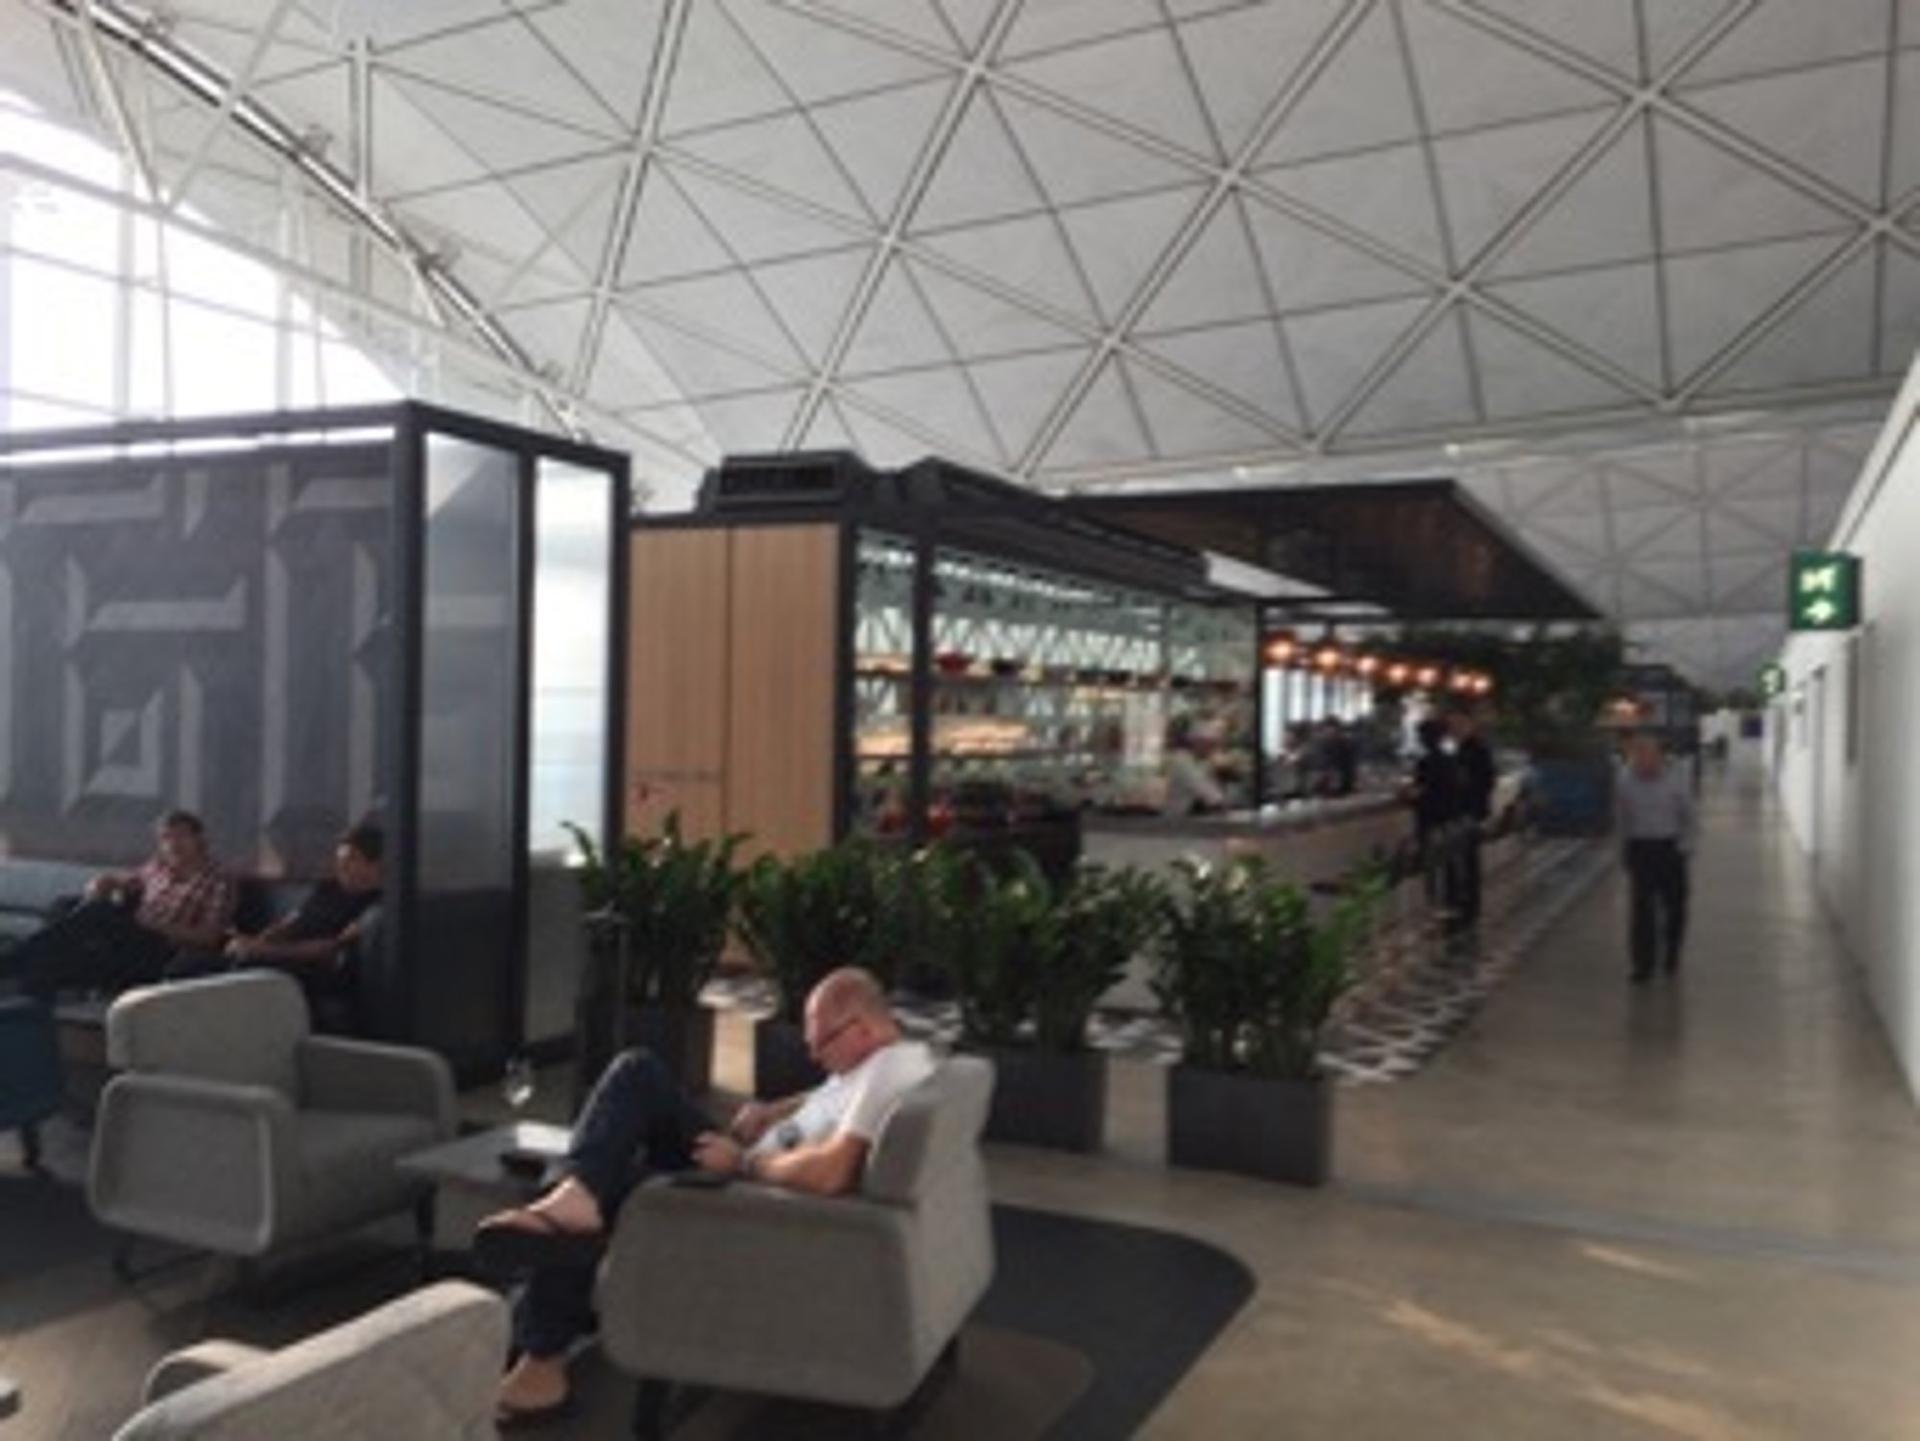 The Qantas Hong Kong Lounge image 53 of 99